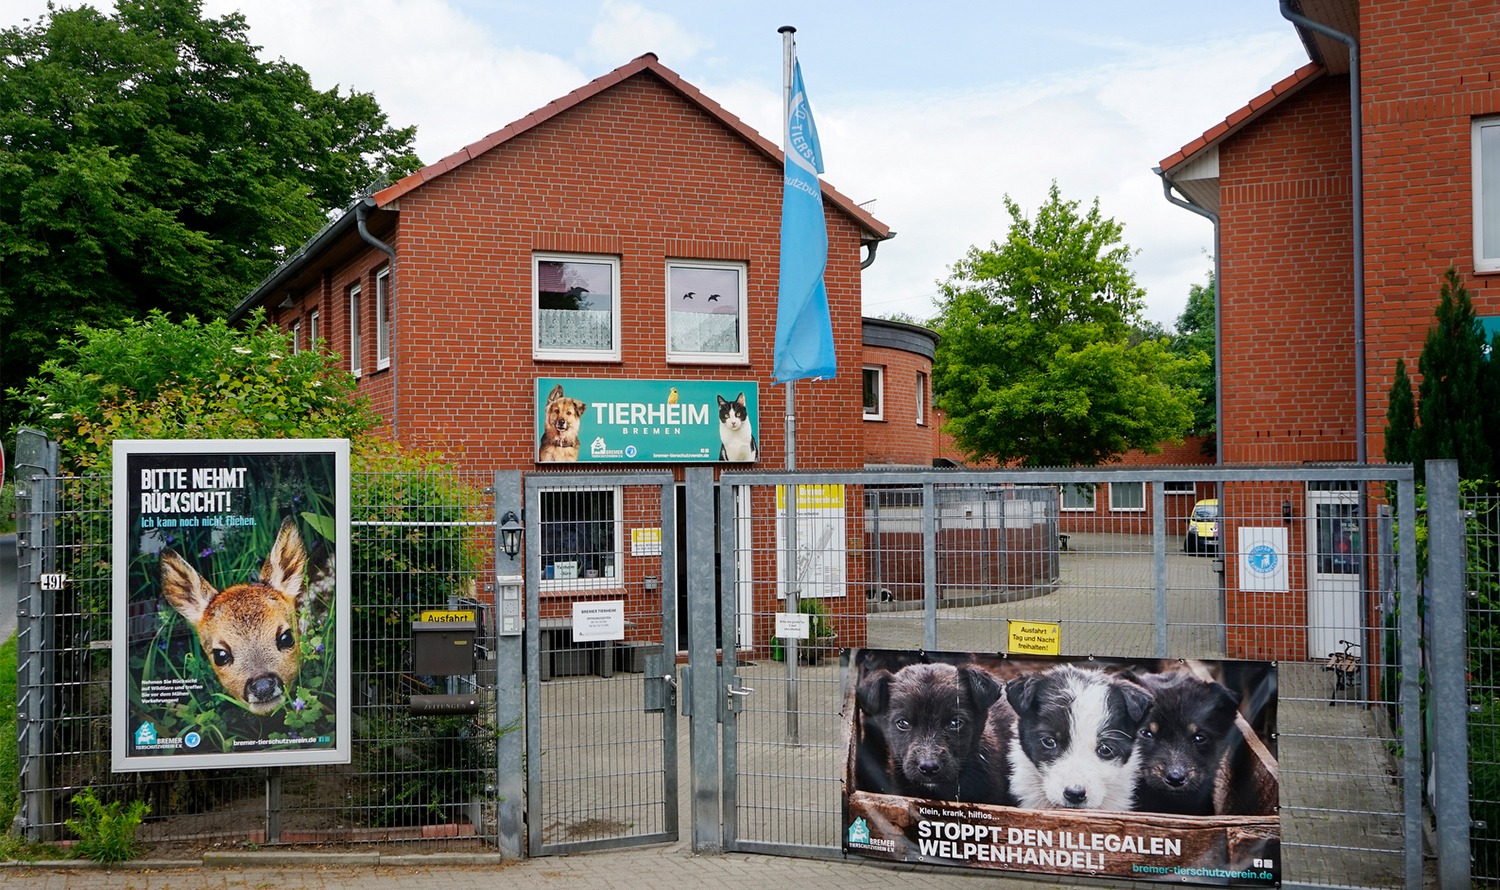 Външен изглед на приюта за животни в Бремен.